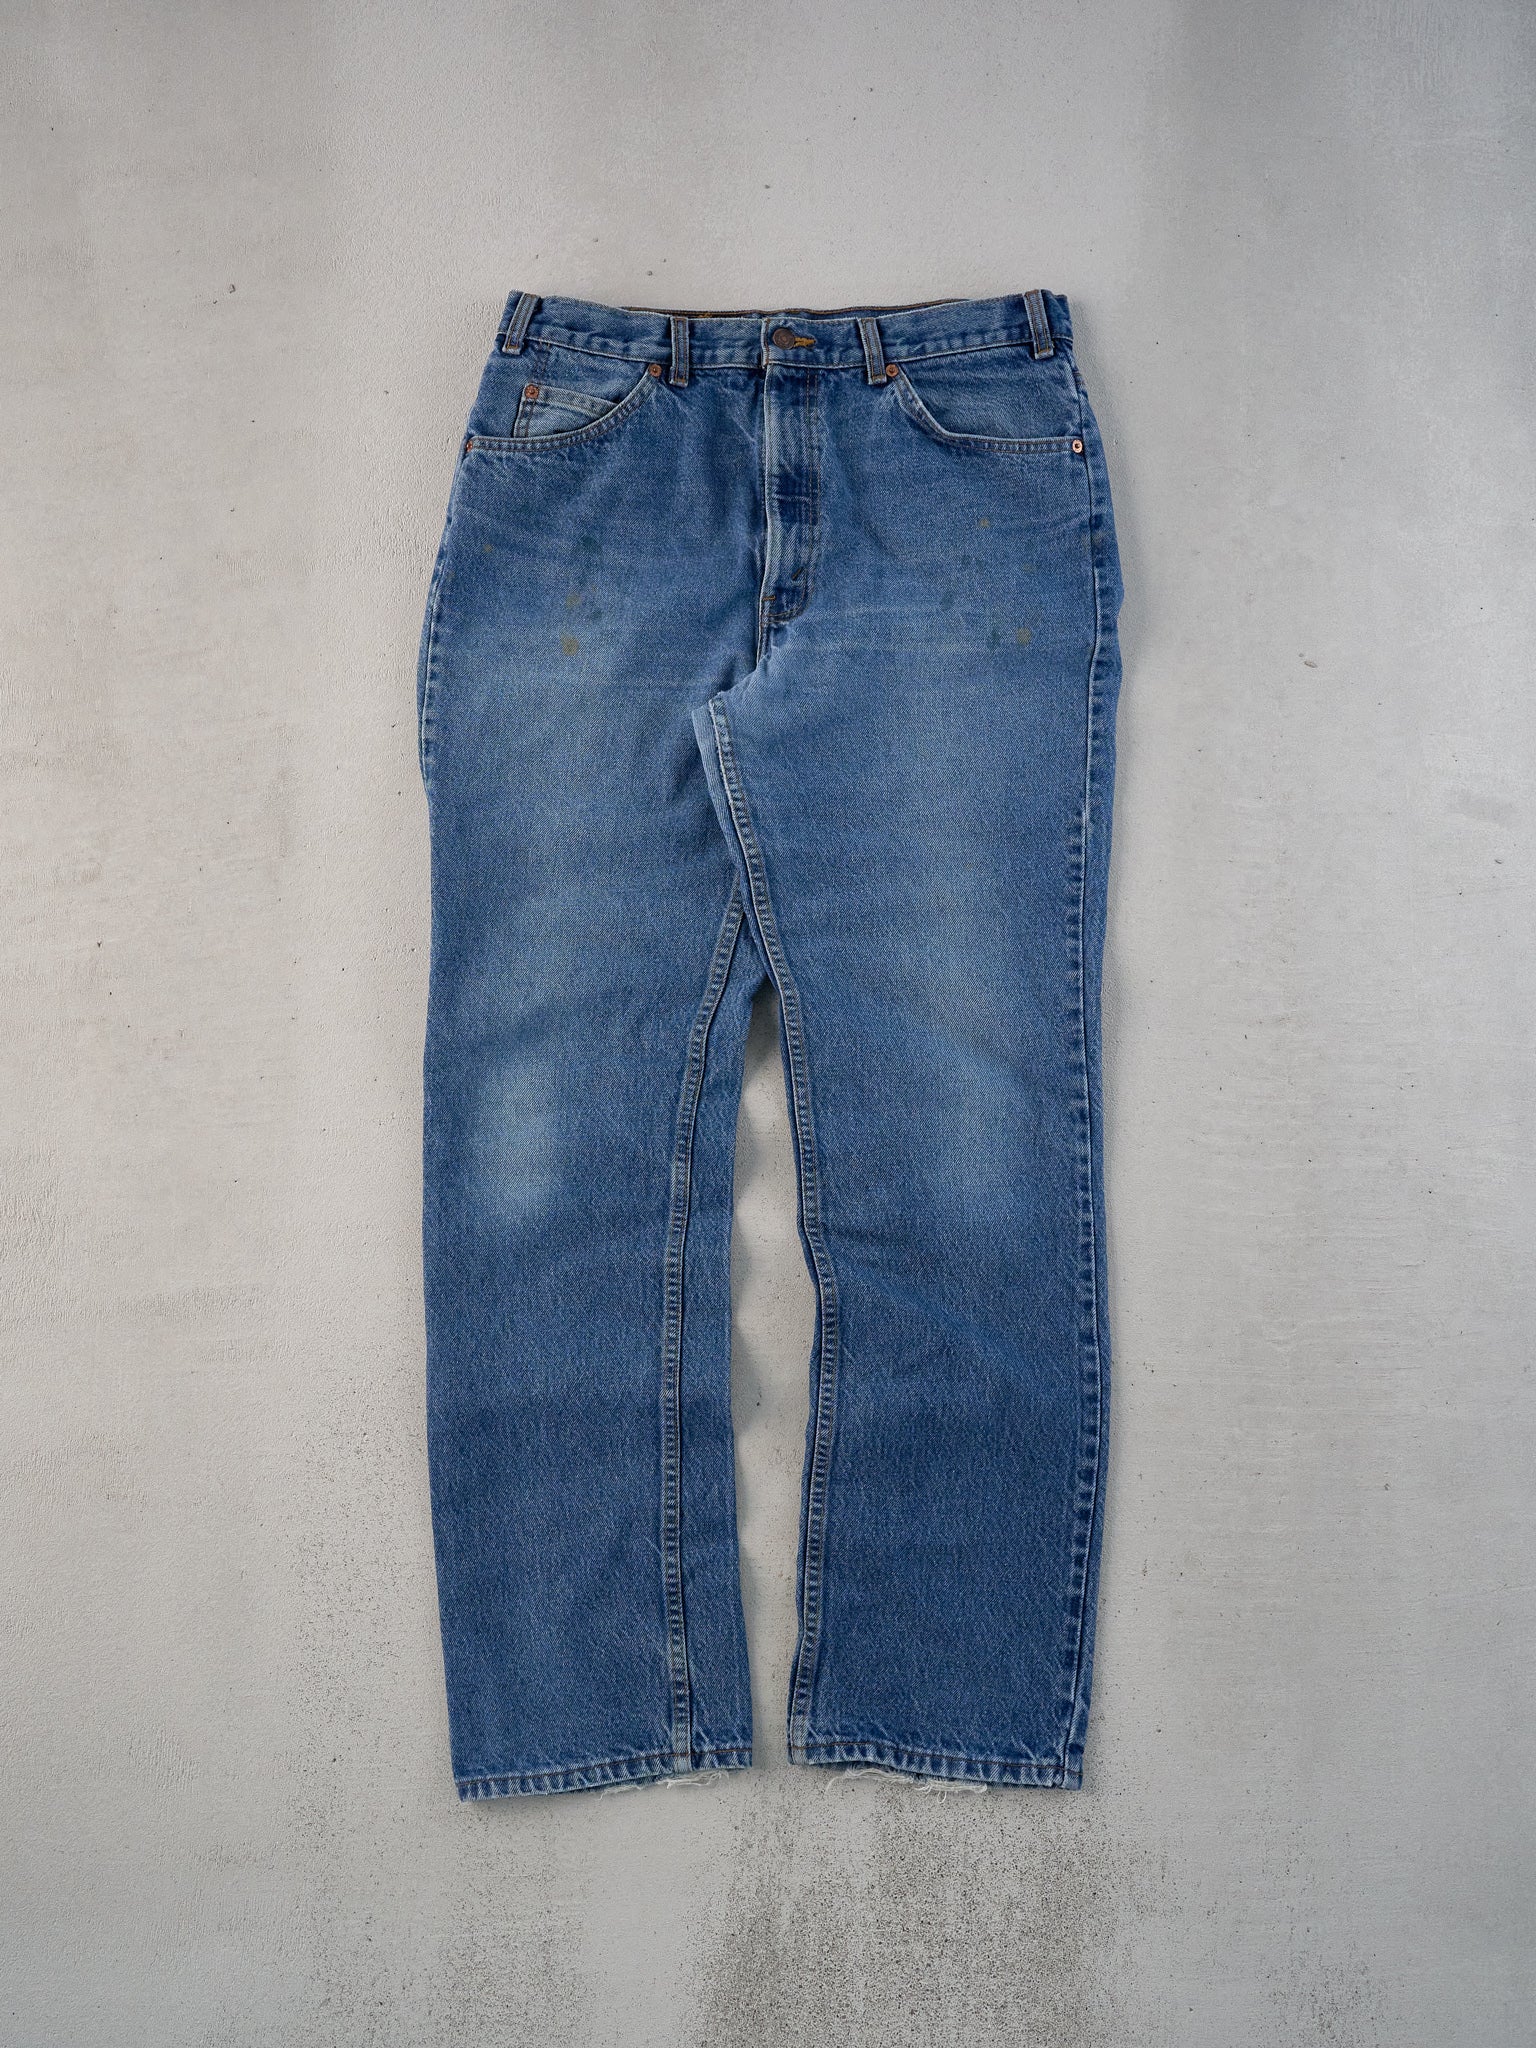 Vintage 70s Blue Levi's 506 Denim Jeans (33x33)